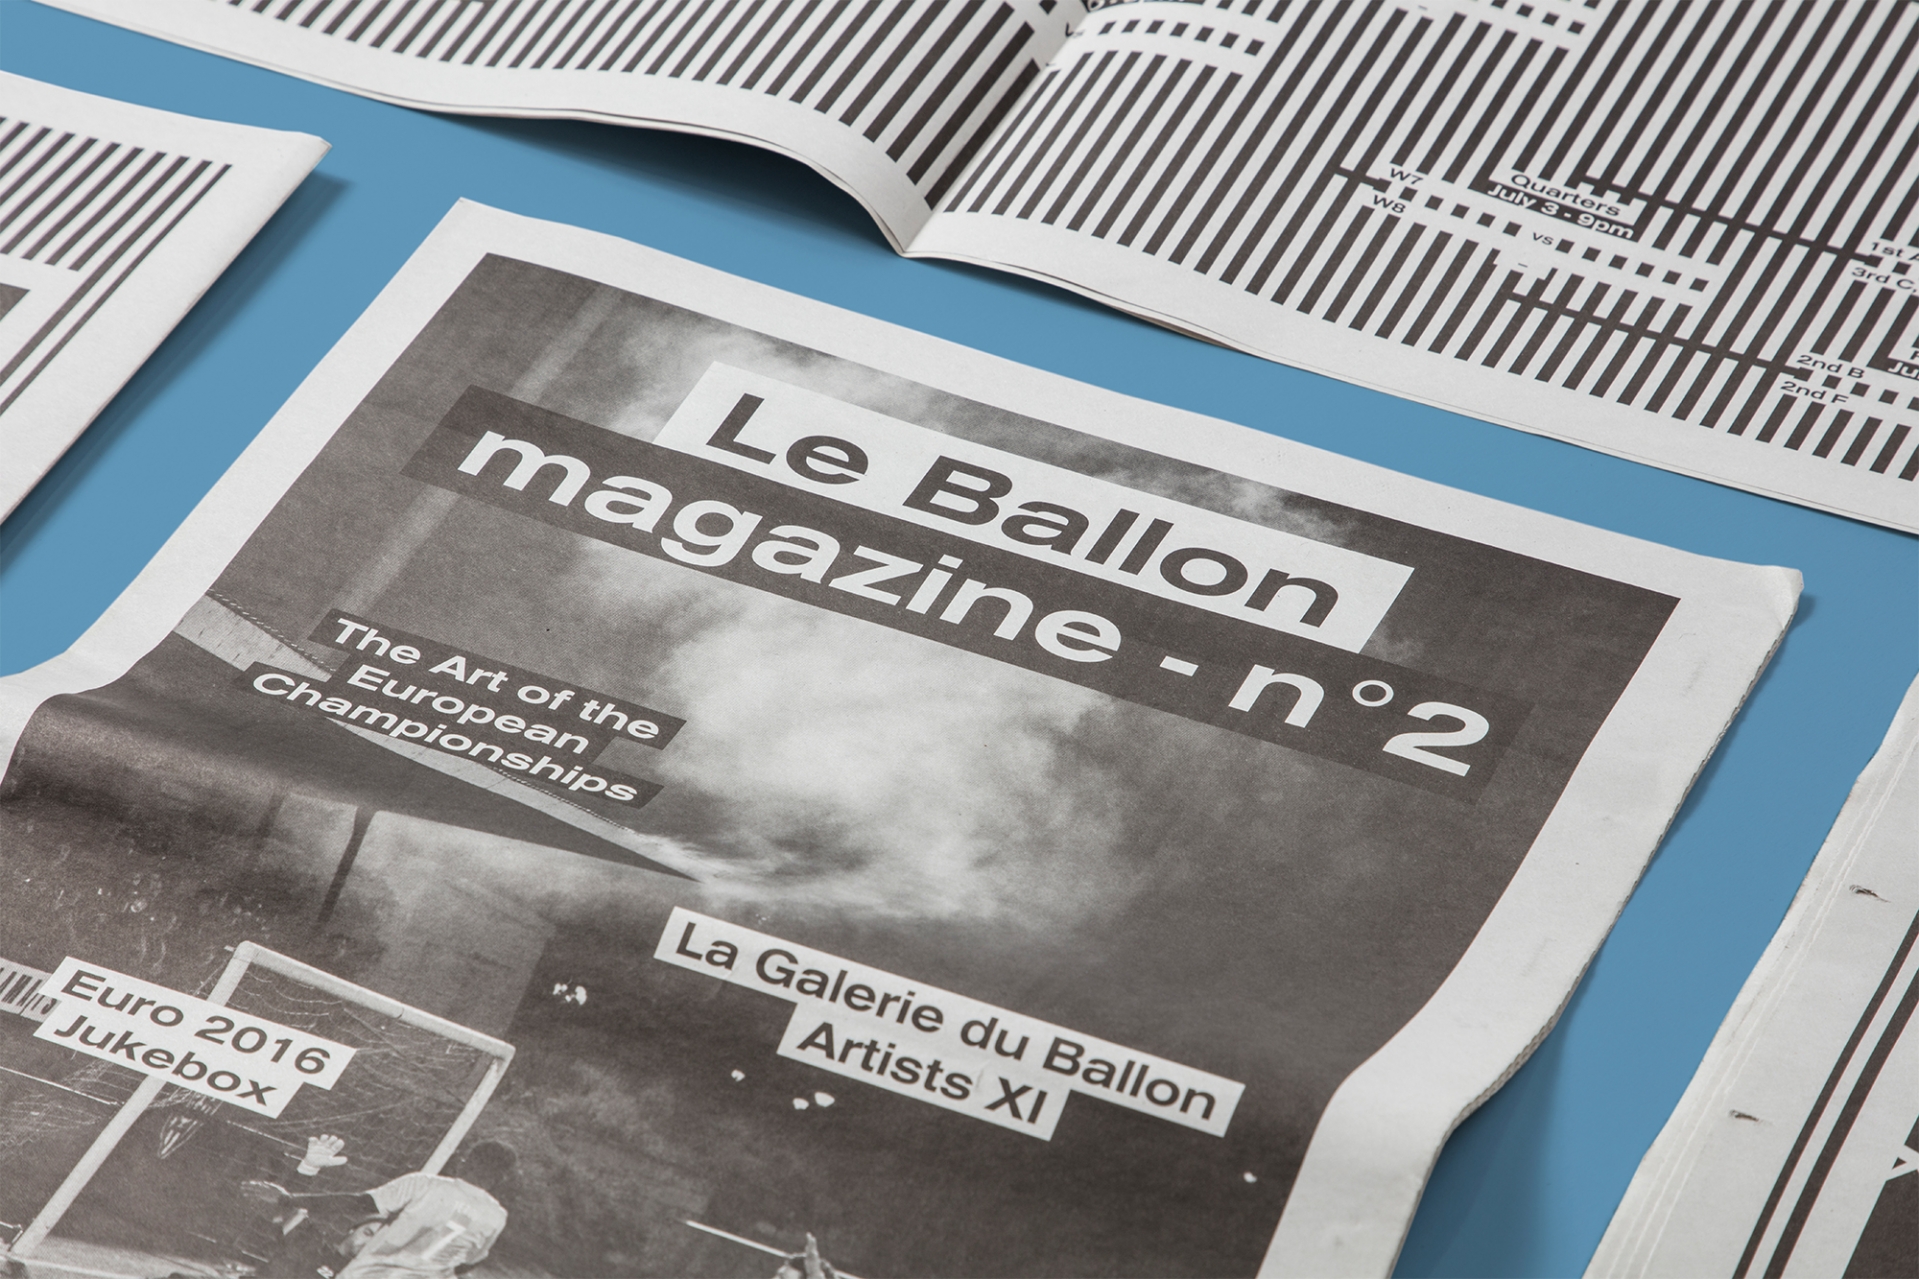 Le Ballon magazine